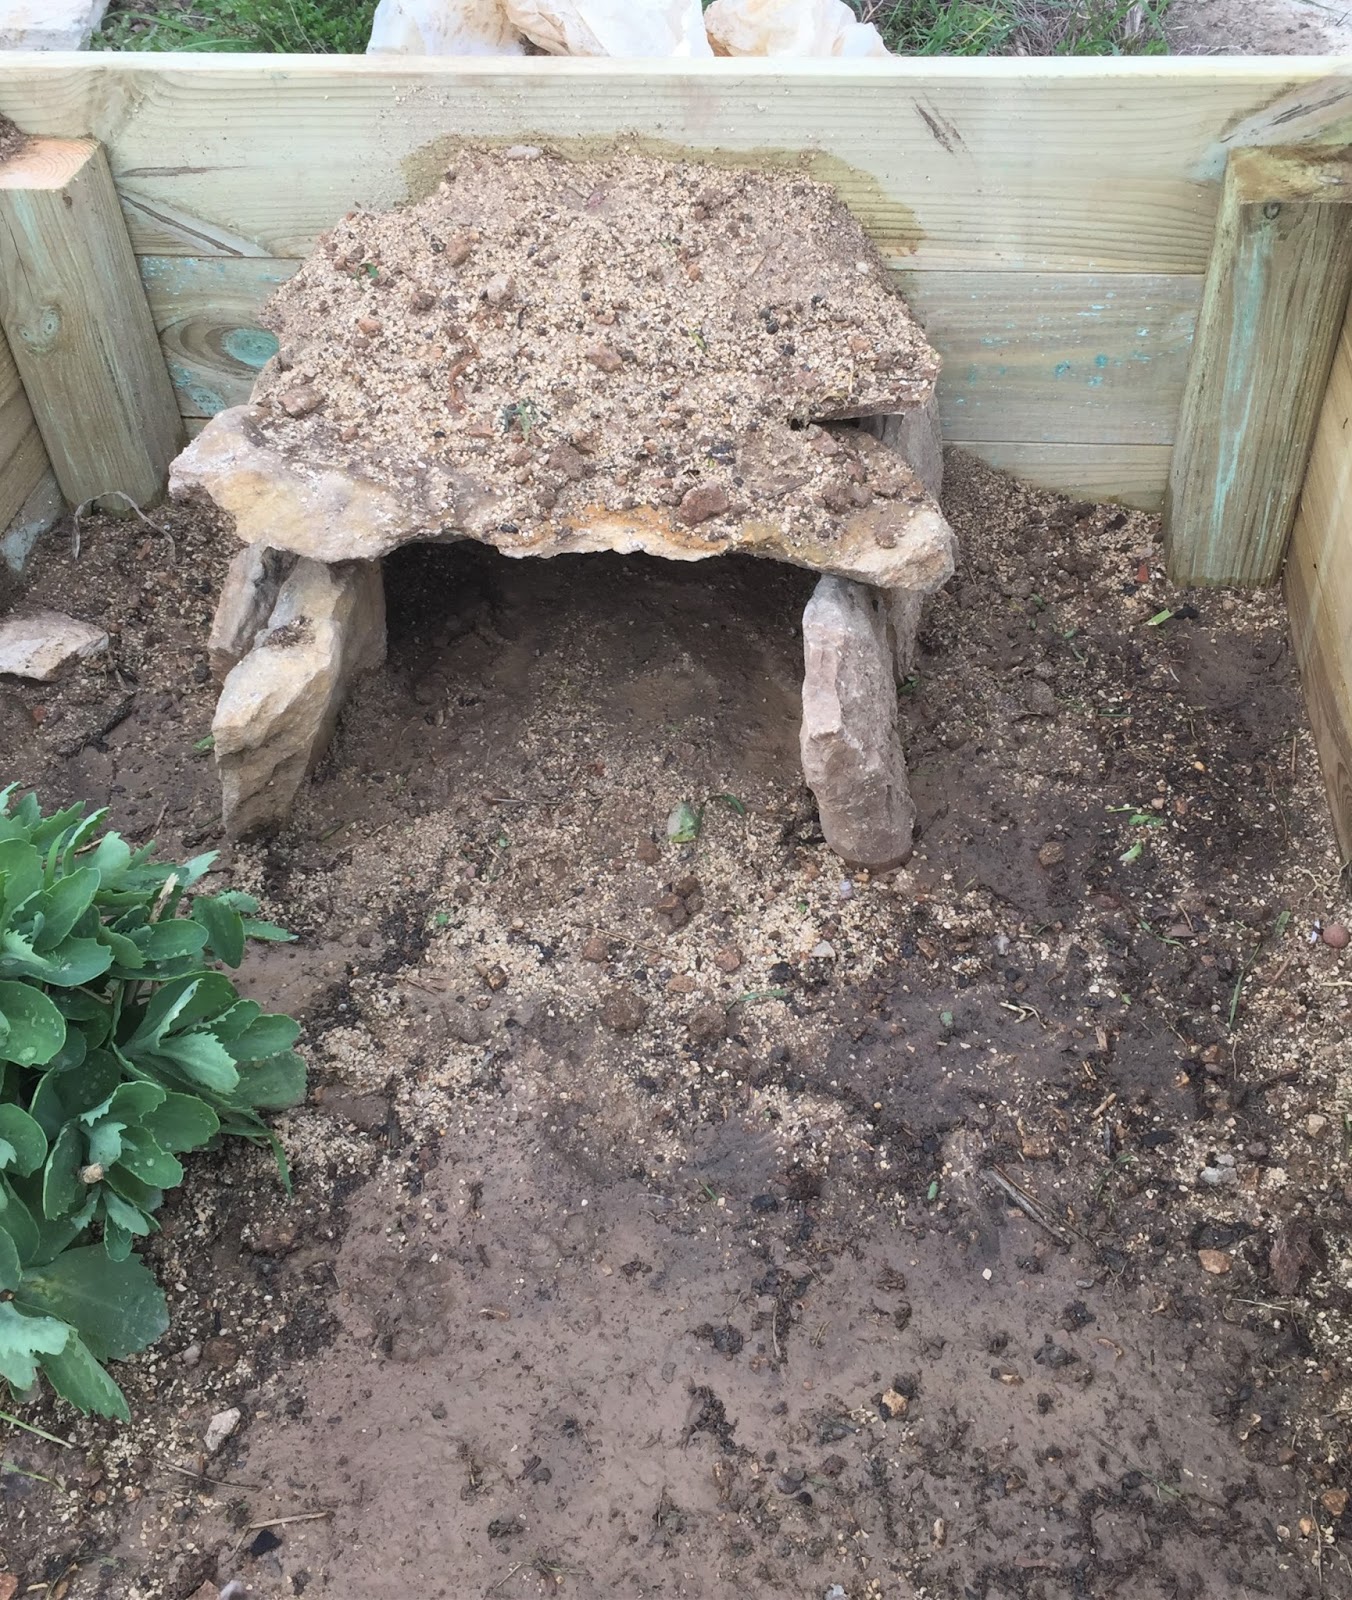 Comment aménager un enclos pour sa tortue ?